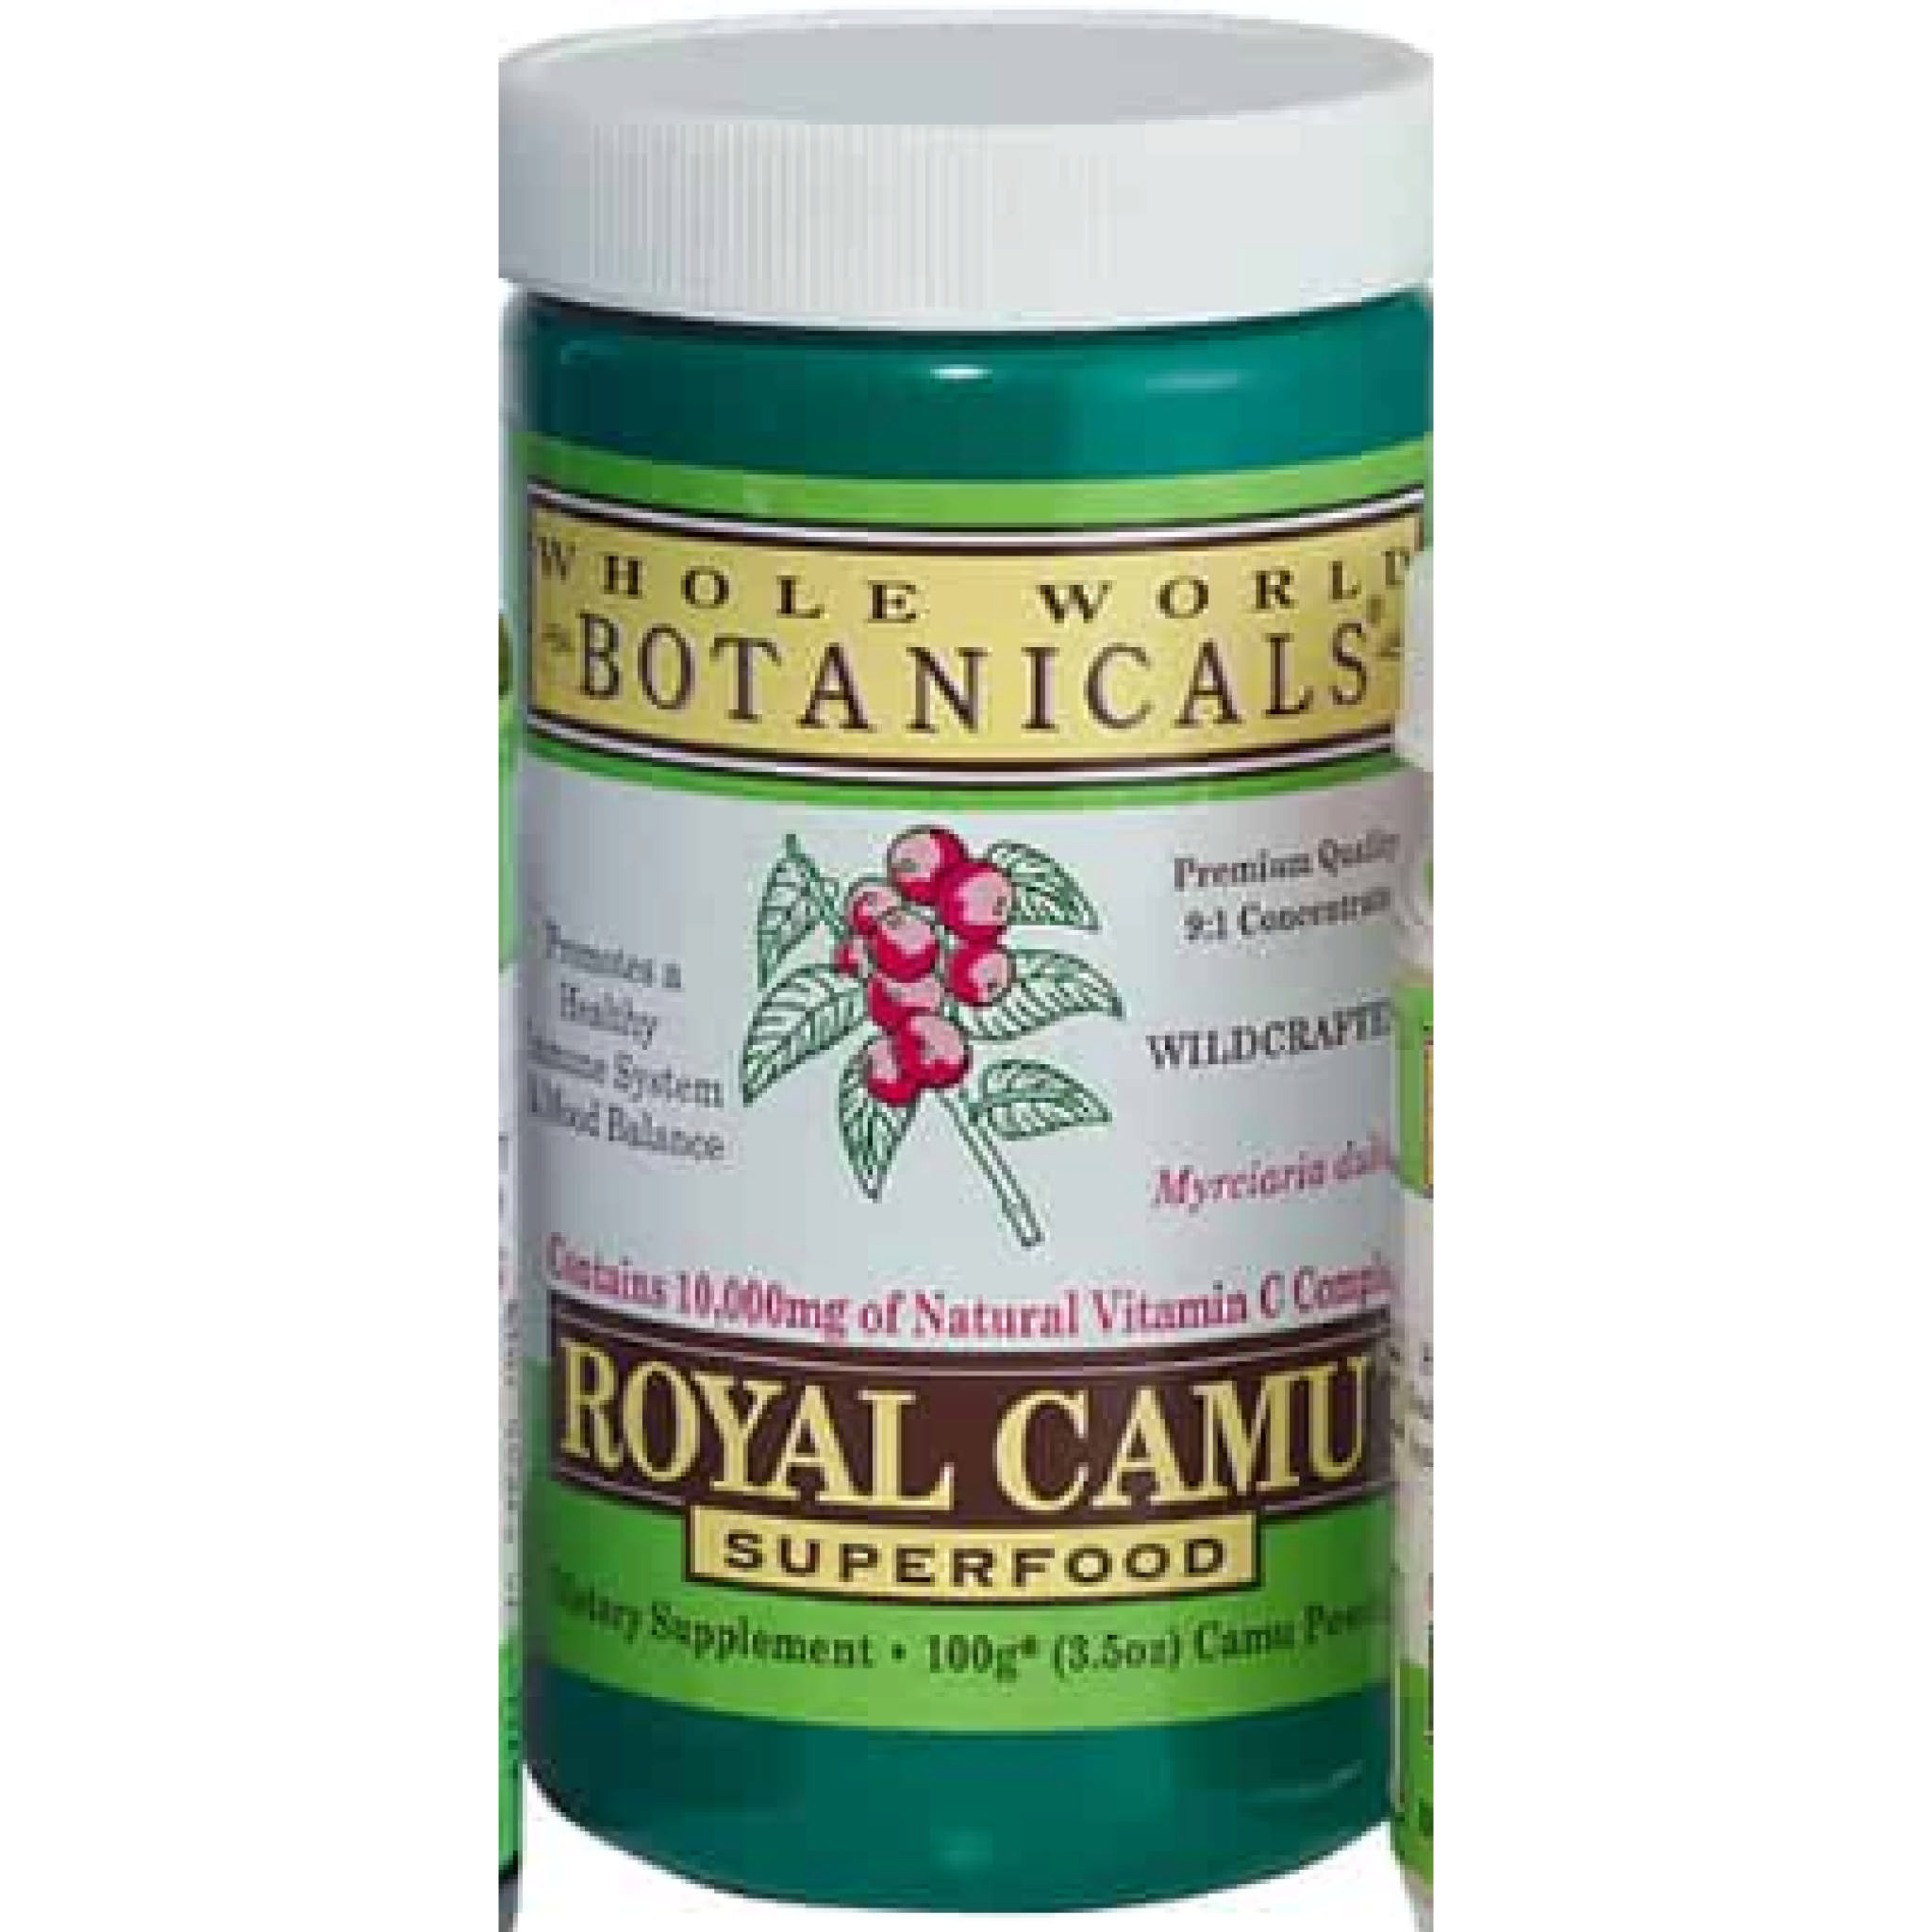 Whole World Botanicals - Royal Camu powder 100gm